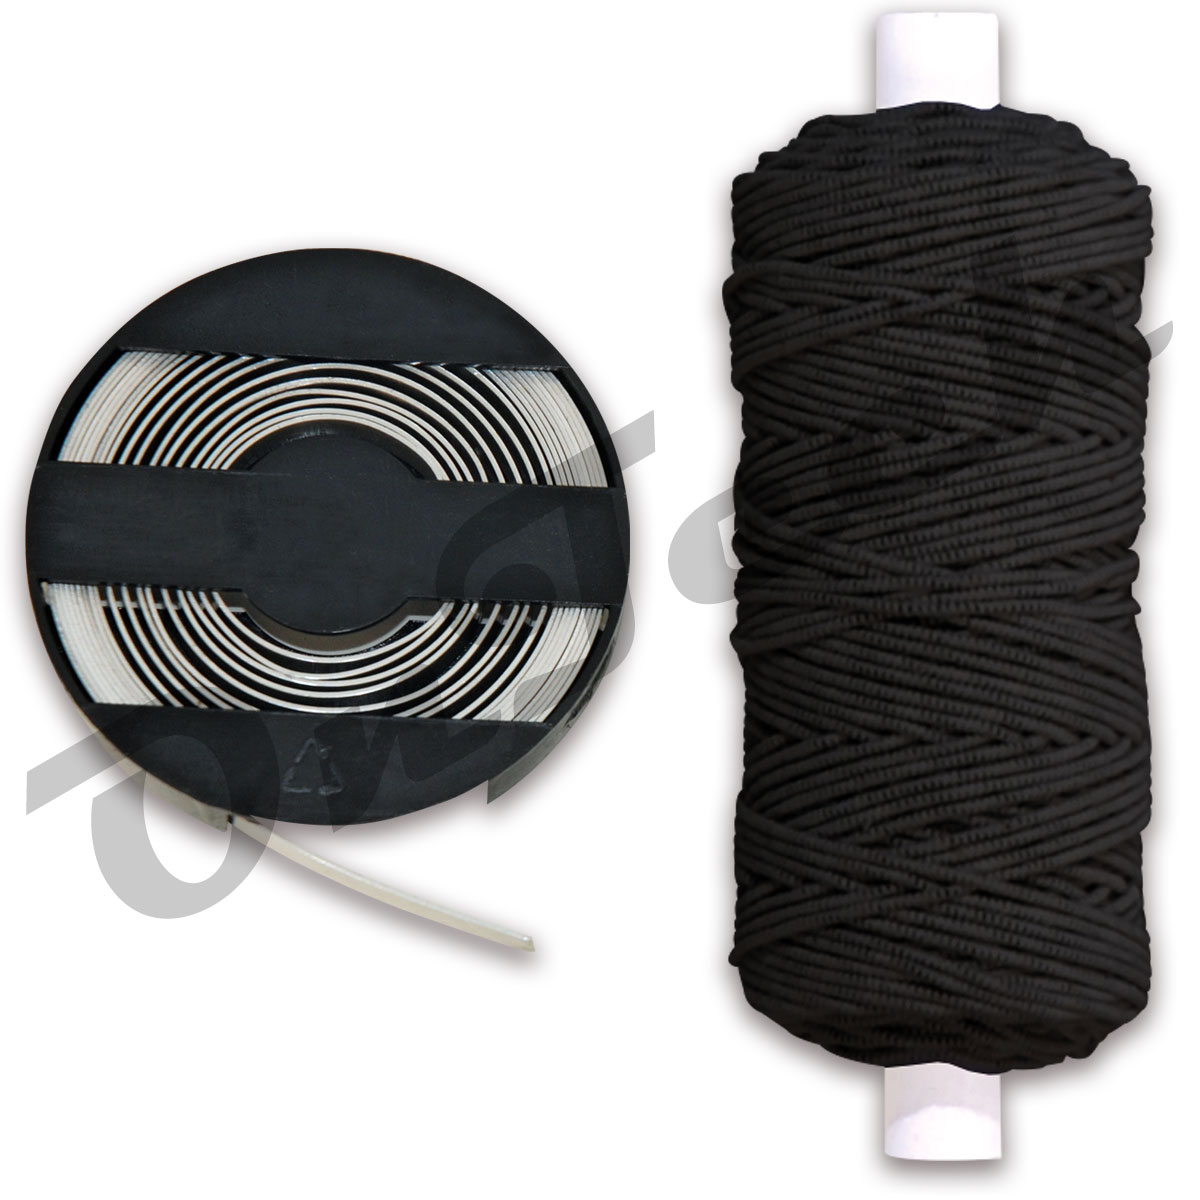 Attalink Verbrauchsmaterial-Set mit schwarzem Bindeband